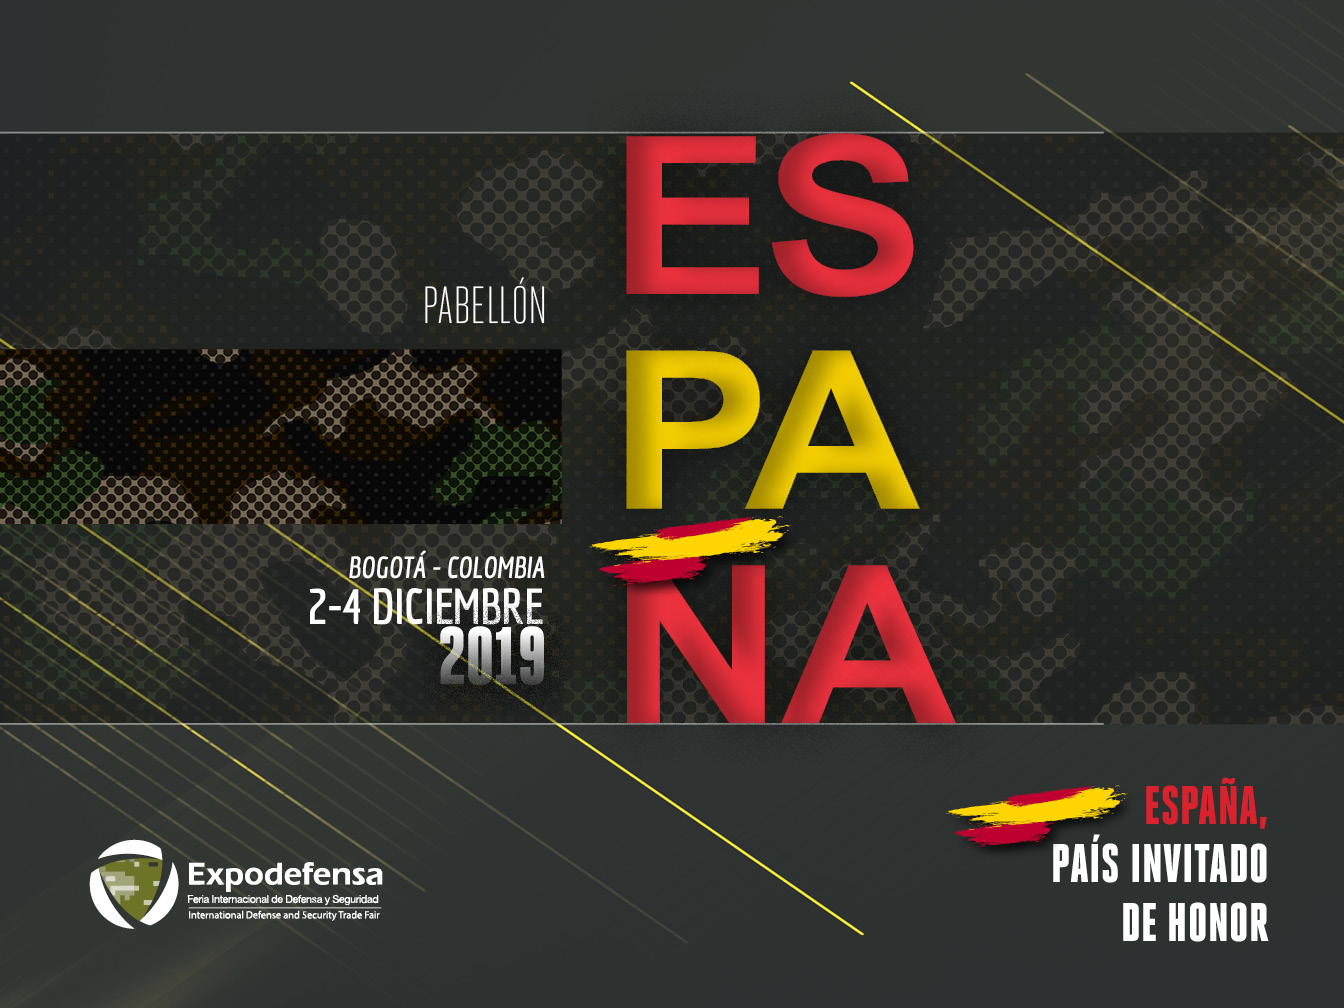 El lunes arranca Expodefensa 2019, con España como País Invitado de Honor